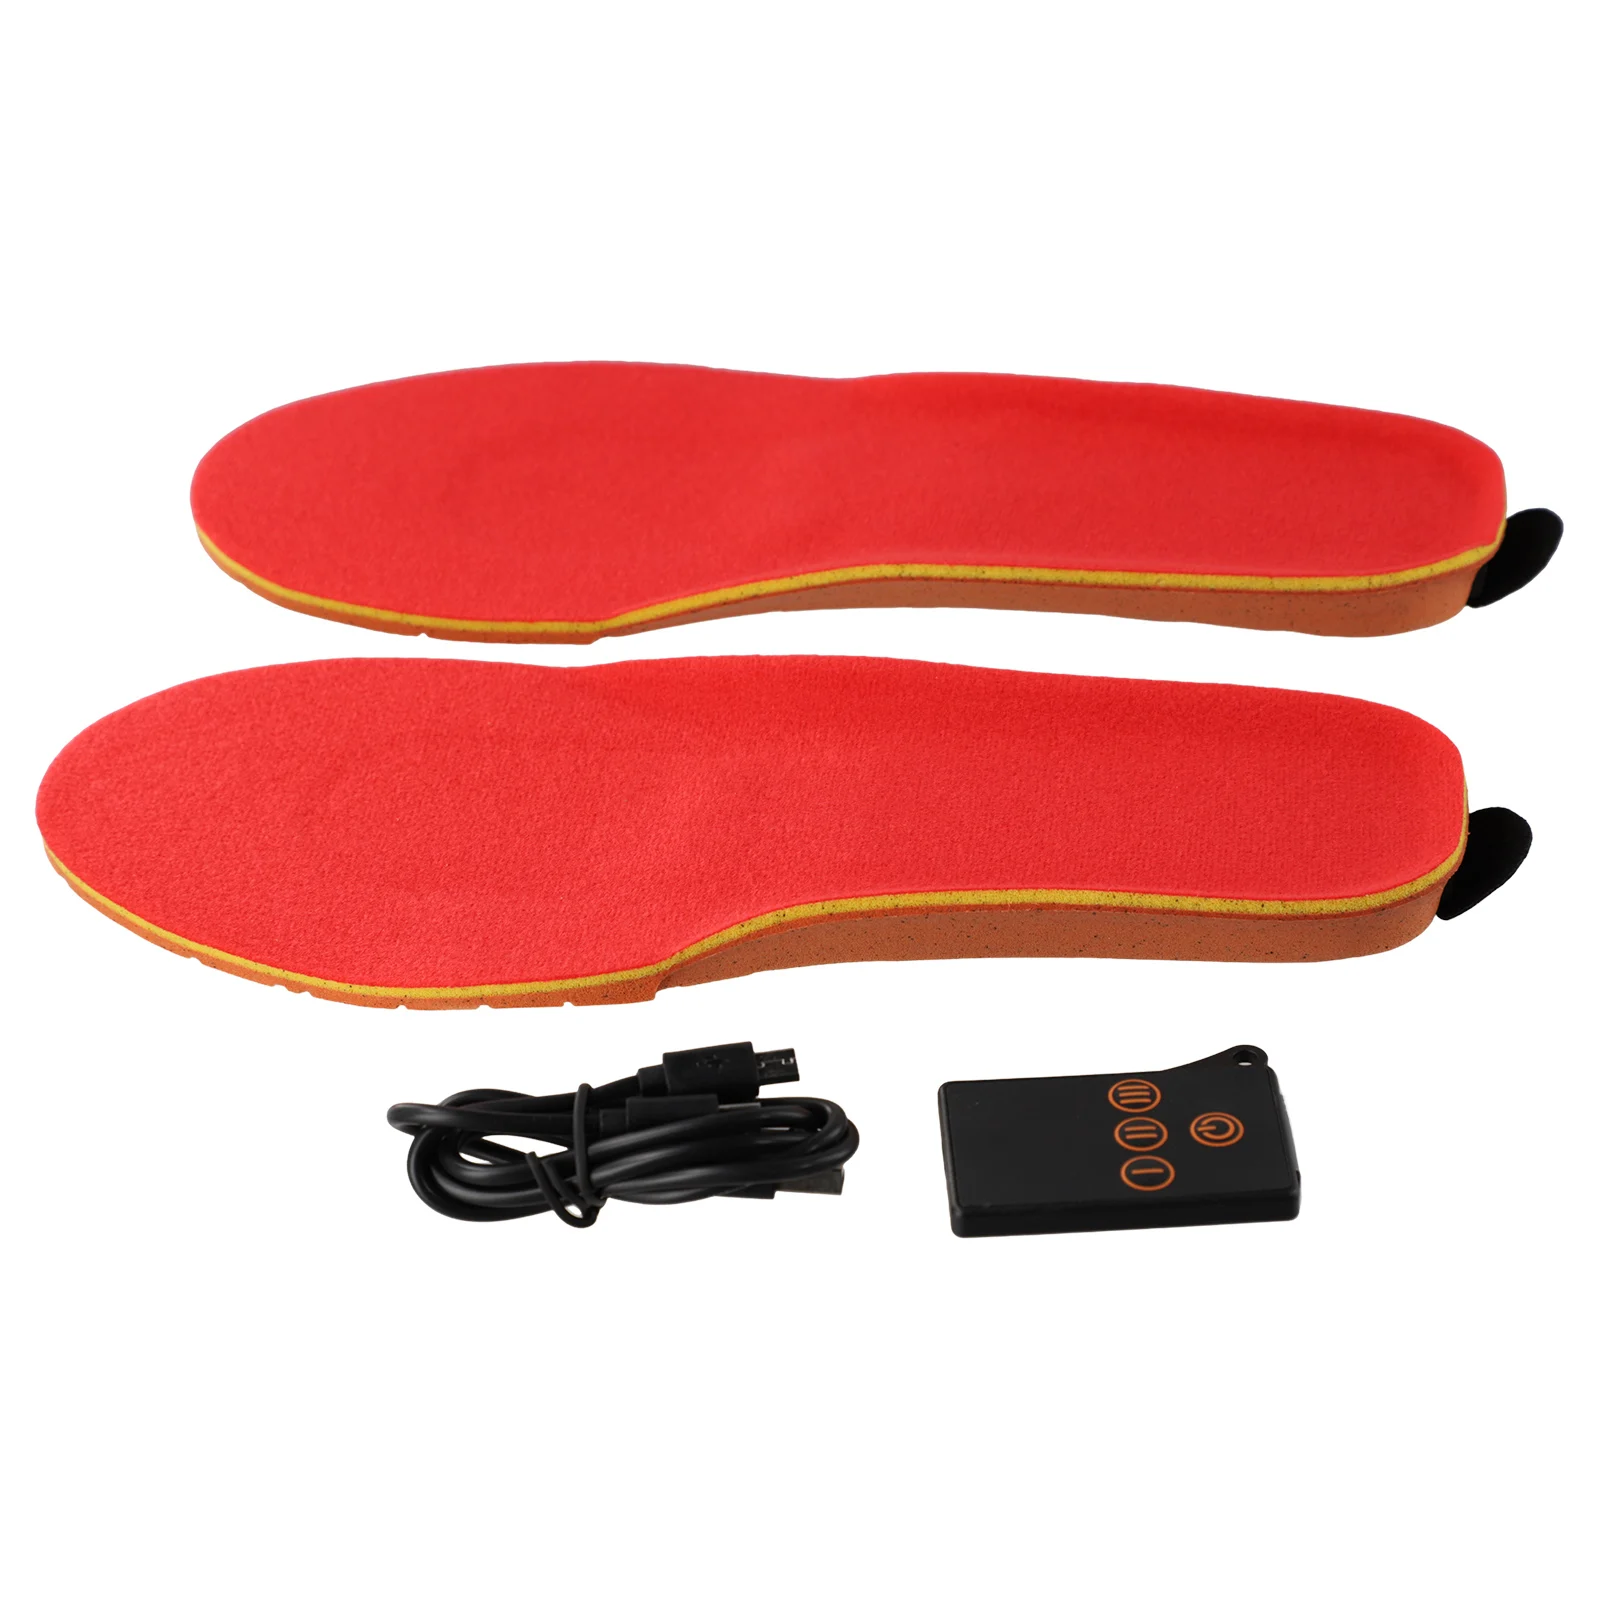 USB-стельки с подогревом для обуви Беспроводное управление Высокая эффективность нагрева Комфортное и дышащее зимнее тепло для ног Изображение 2